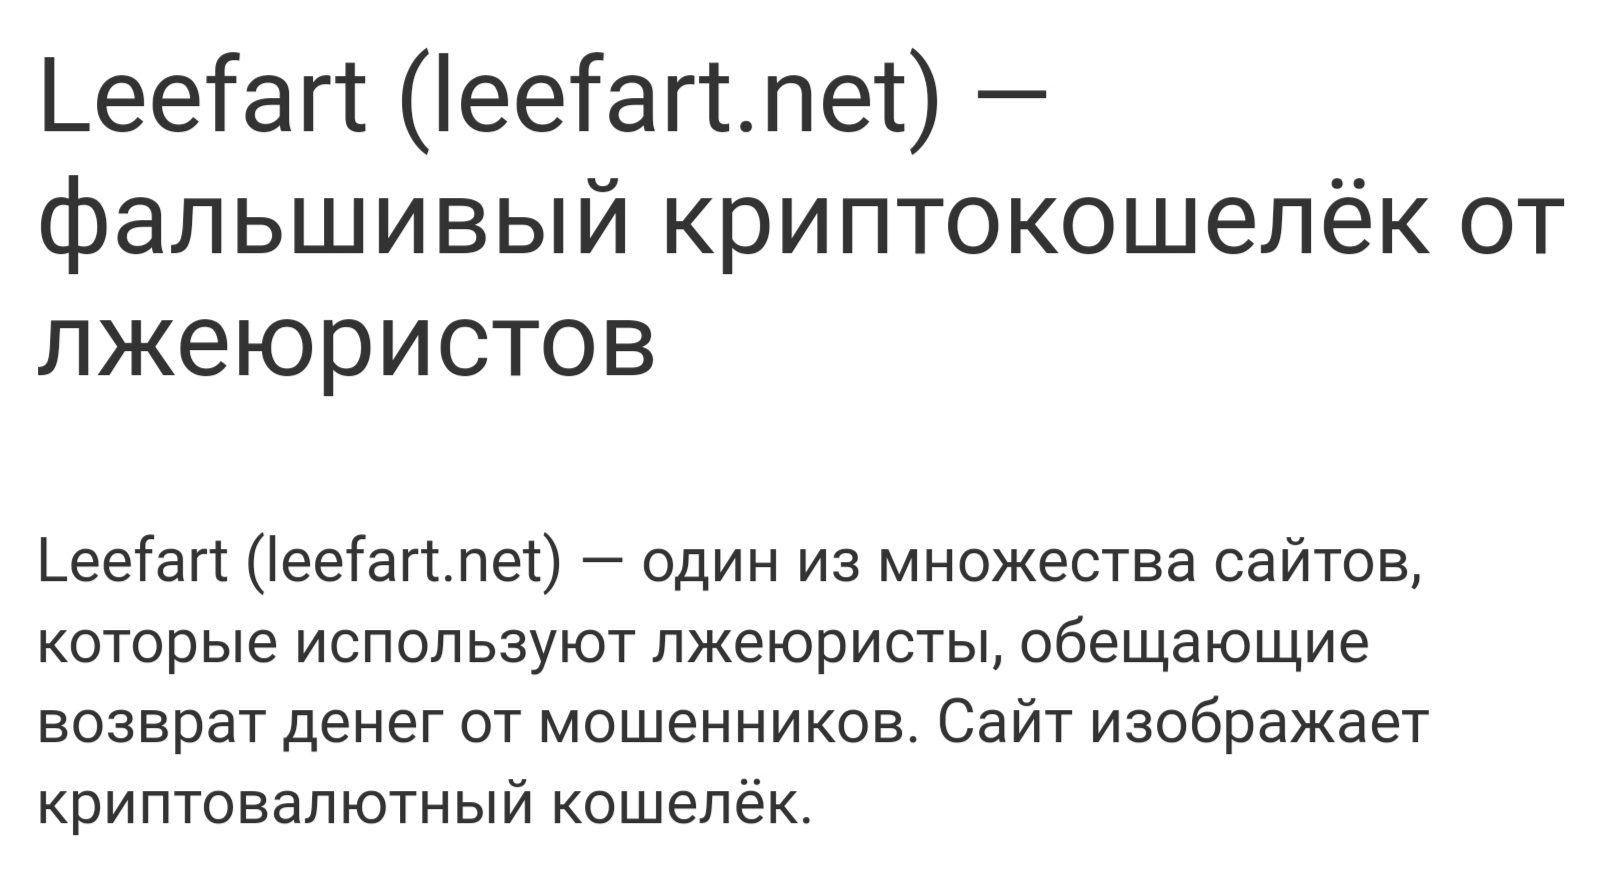 Отзывы о Leefart